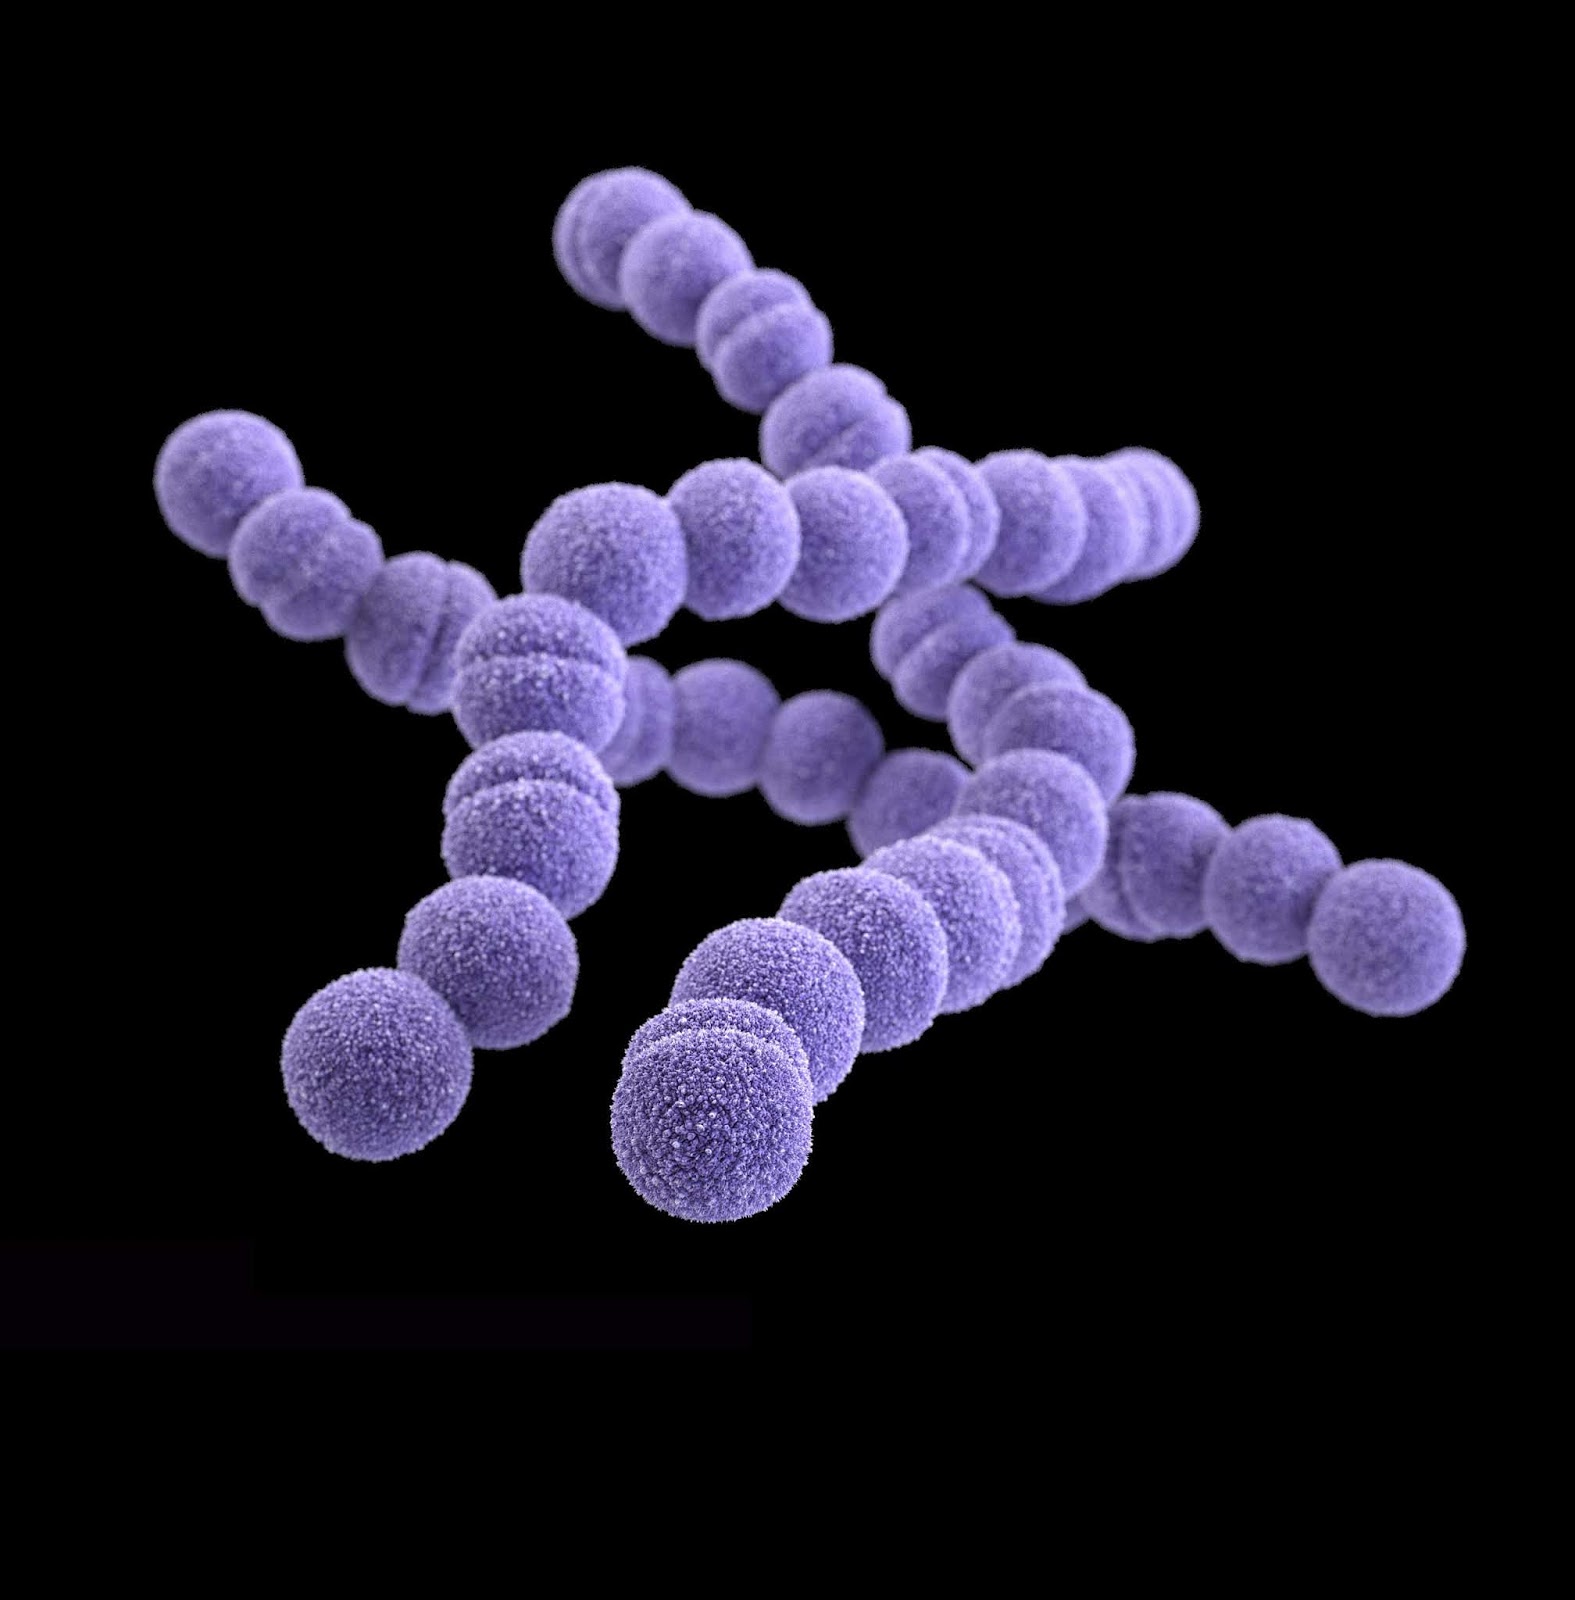 bacteri h